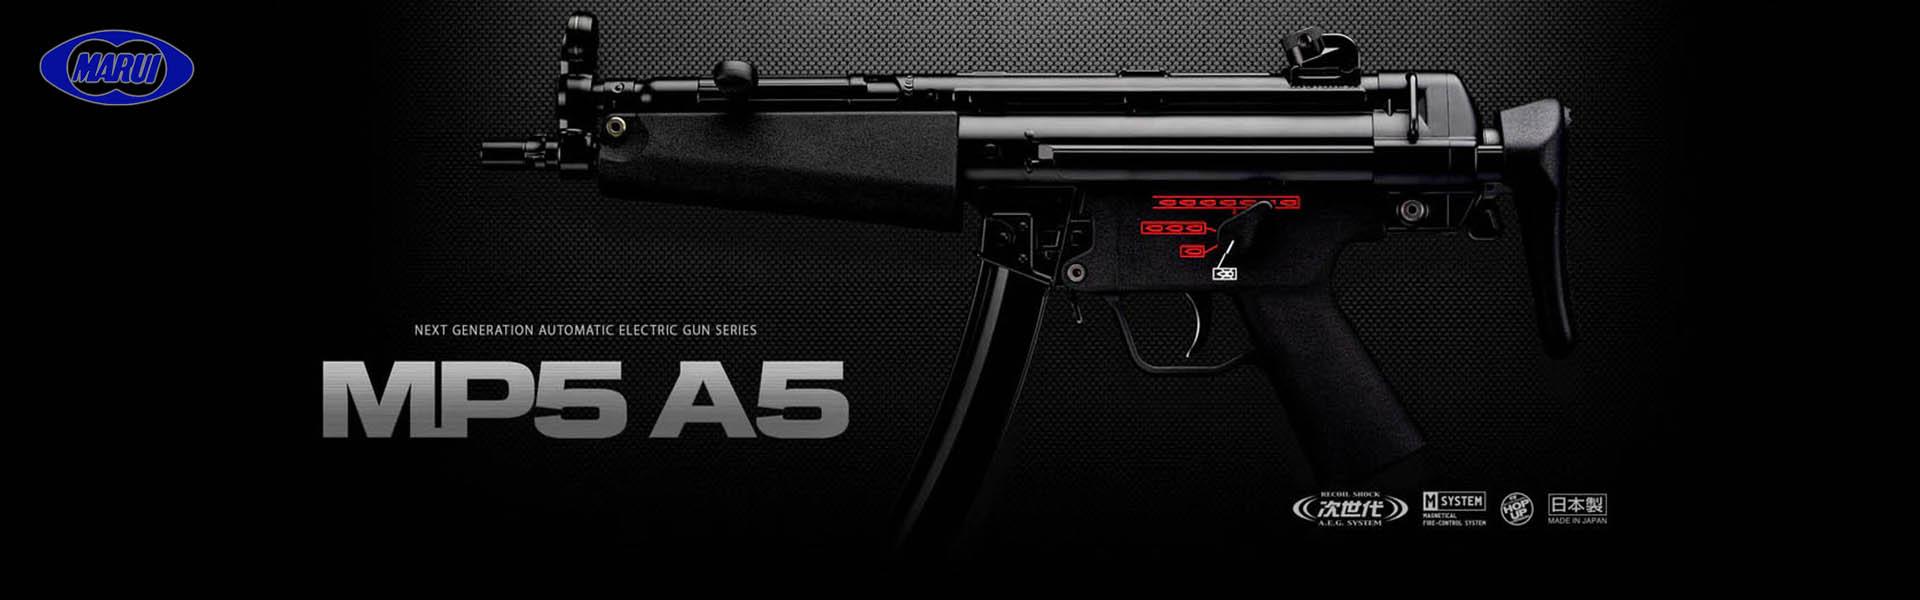 Submachine gun MP5 A5 Next Gen M System